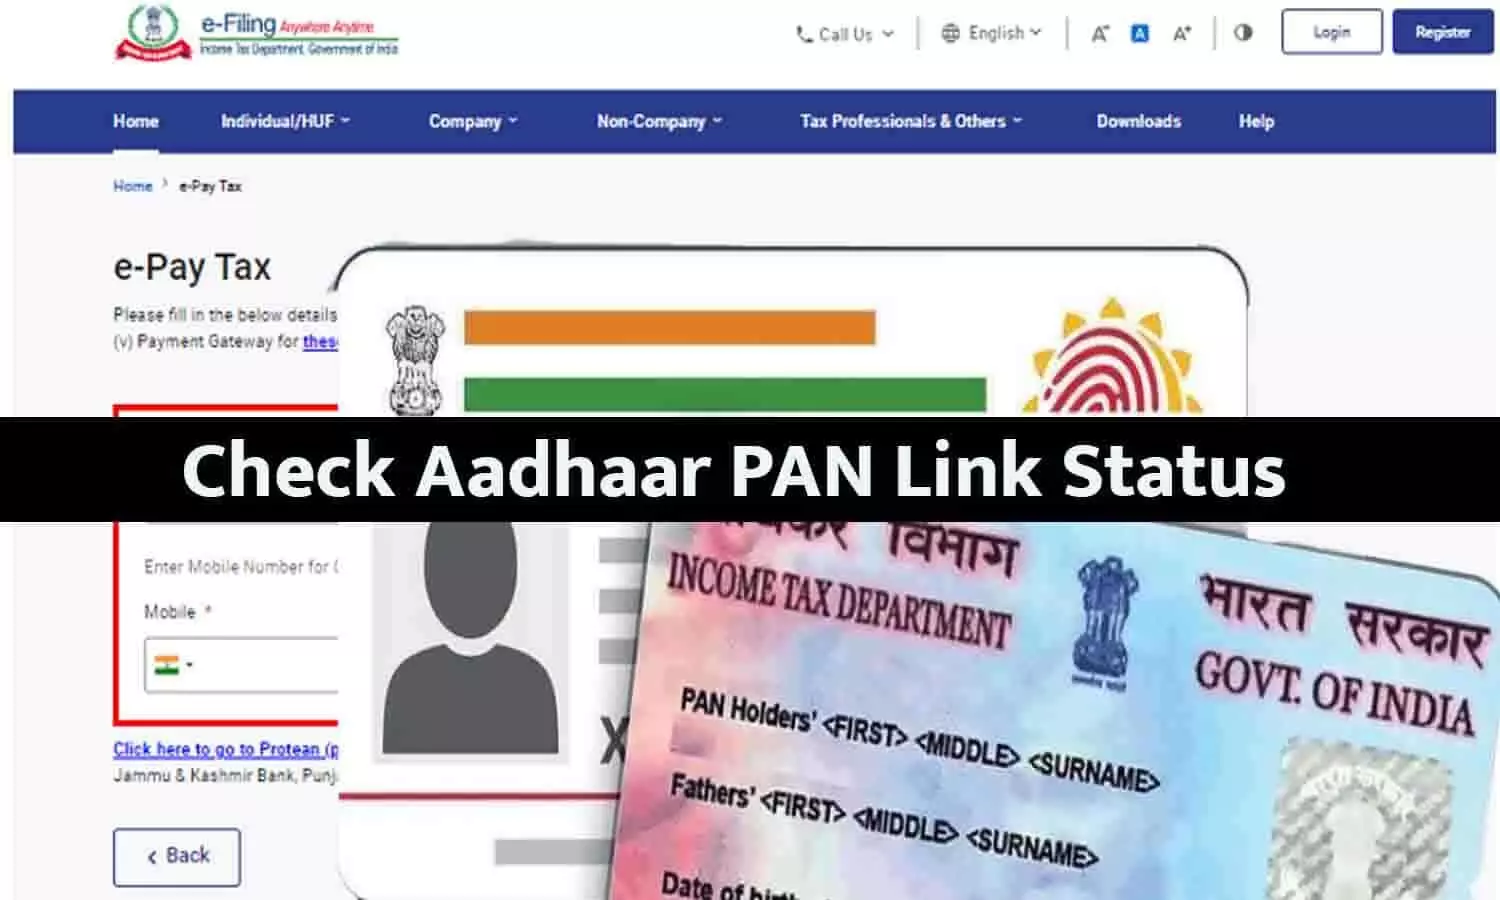 Check Aadhaar PAN Link Status